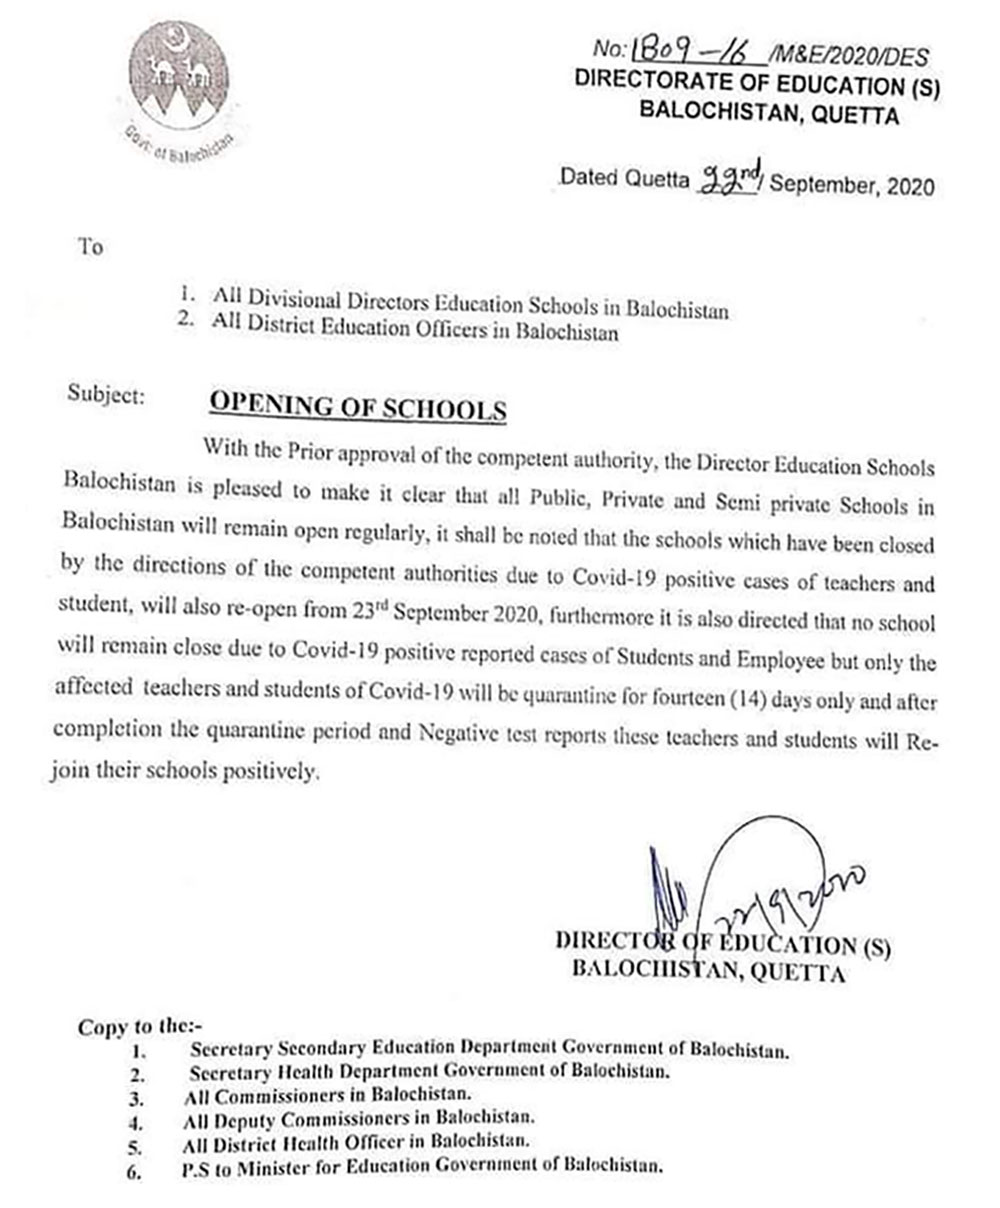 بلوچستان میں اسکول شیڈول کے مطابق کھلیں گے، مراسلہ